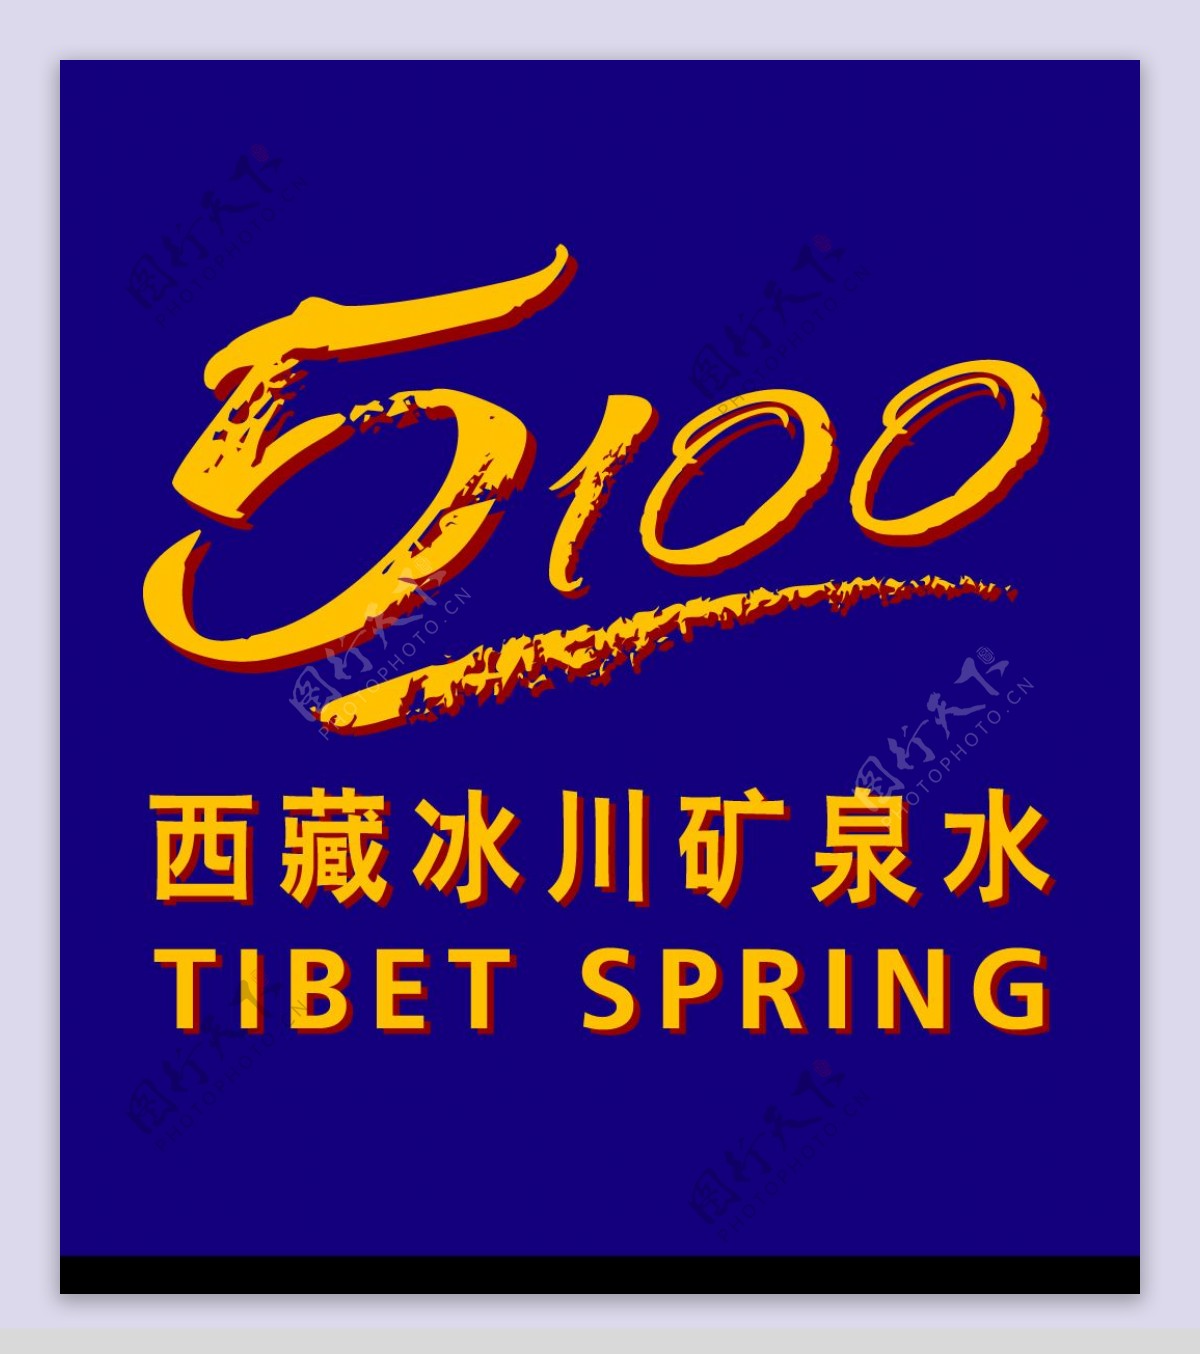 5100西藏冰川矿泉水图片